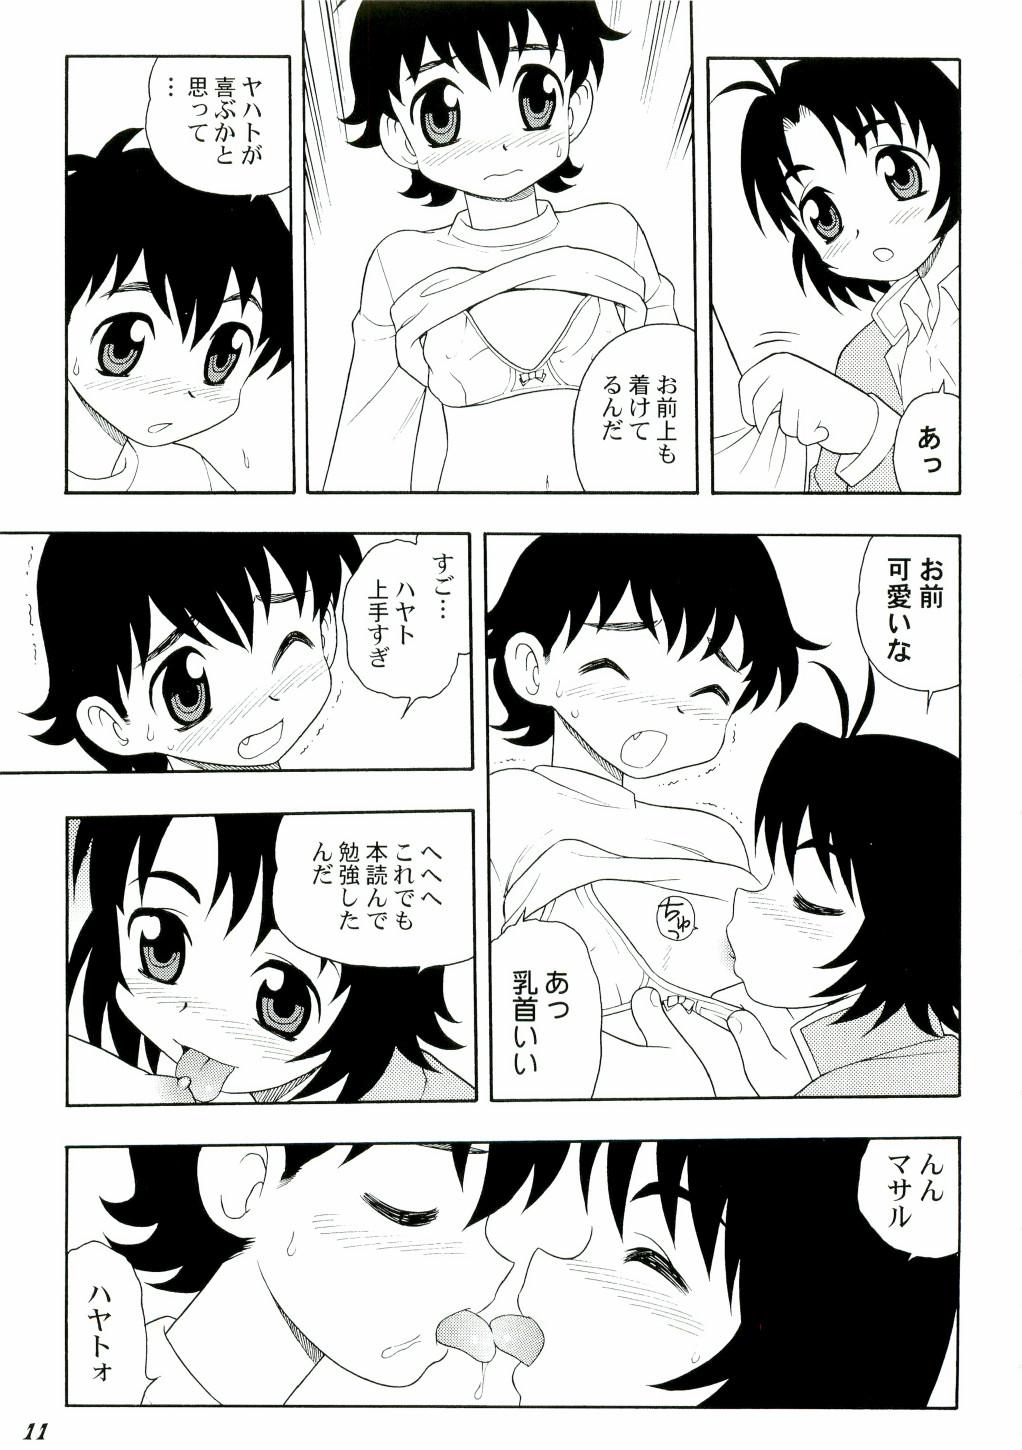 Cocksucking Shot a Shota 3 - Tenchi muyo Nudes - Page 11